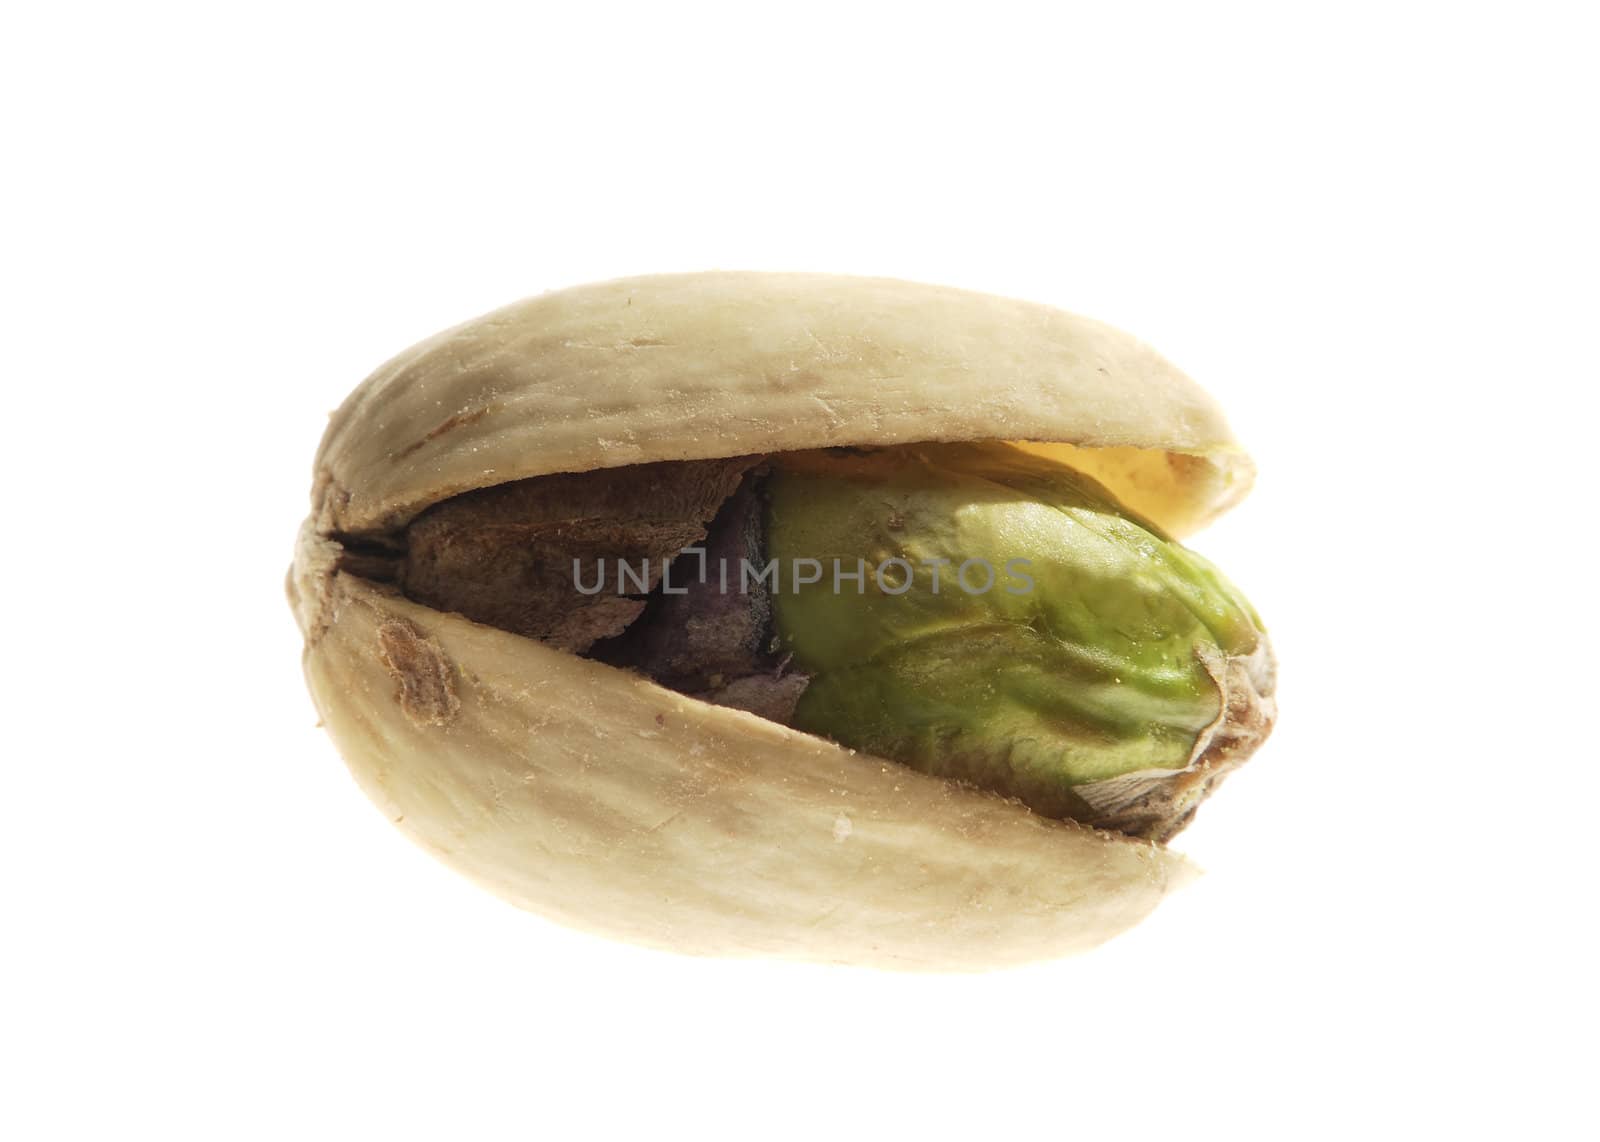 The pistachio nut closeup on white